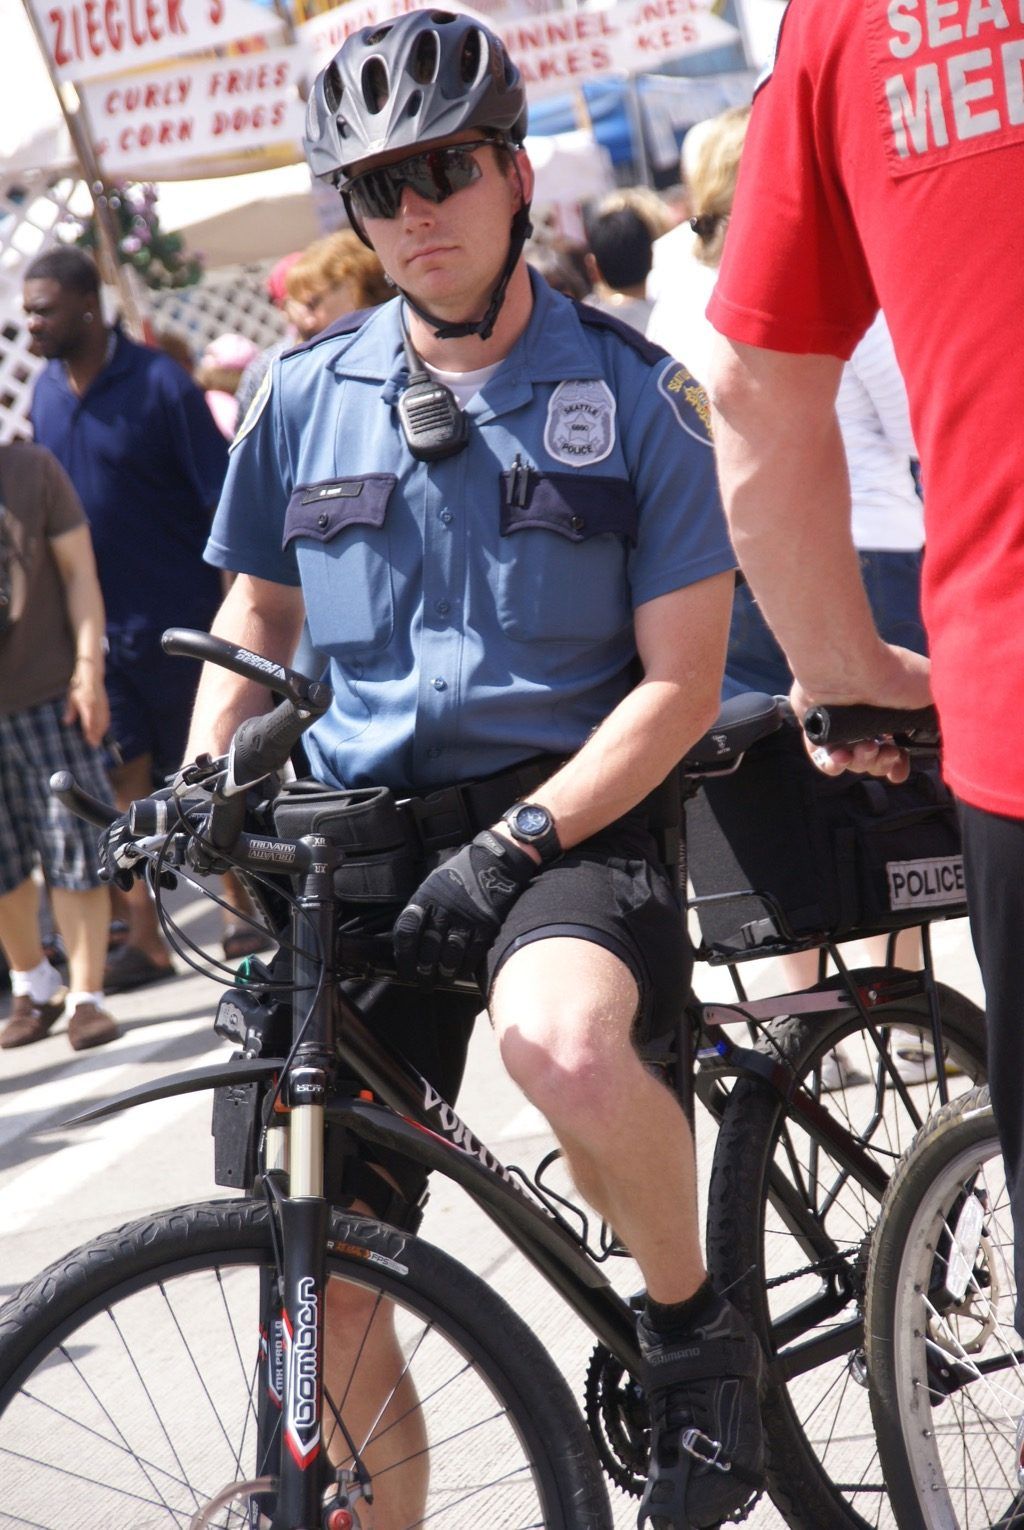 Poliisi polkupyörällä